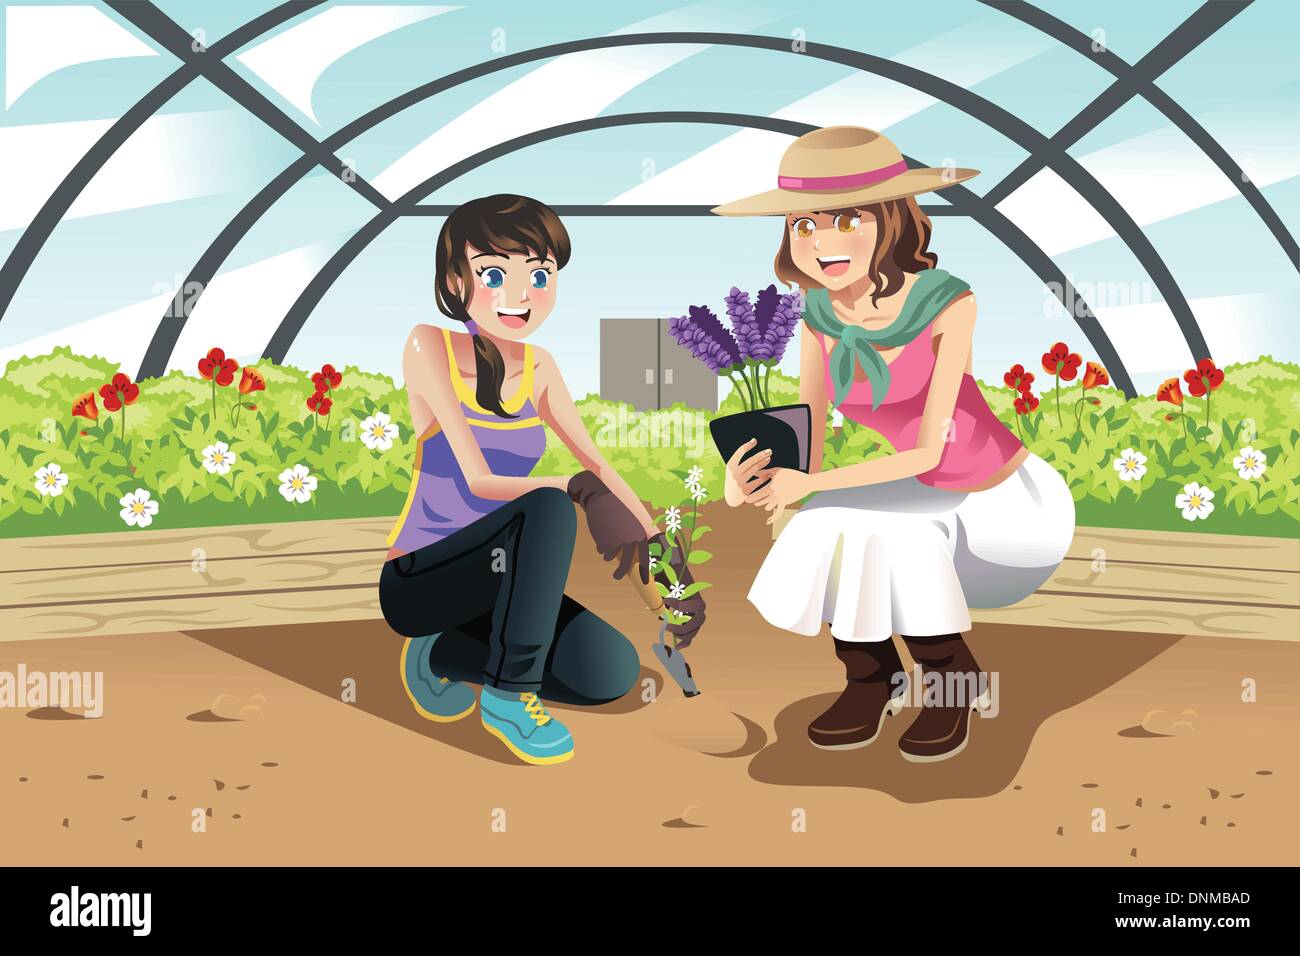 Eine Vektor-Illustration von glücklichen Jugendlichen Pflanzen in einem Gewächshaus Stock Vektor